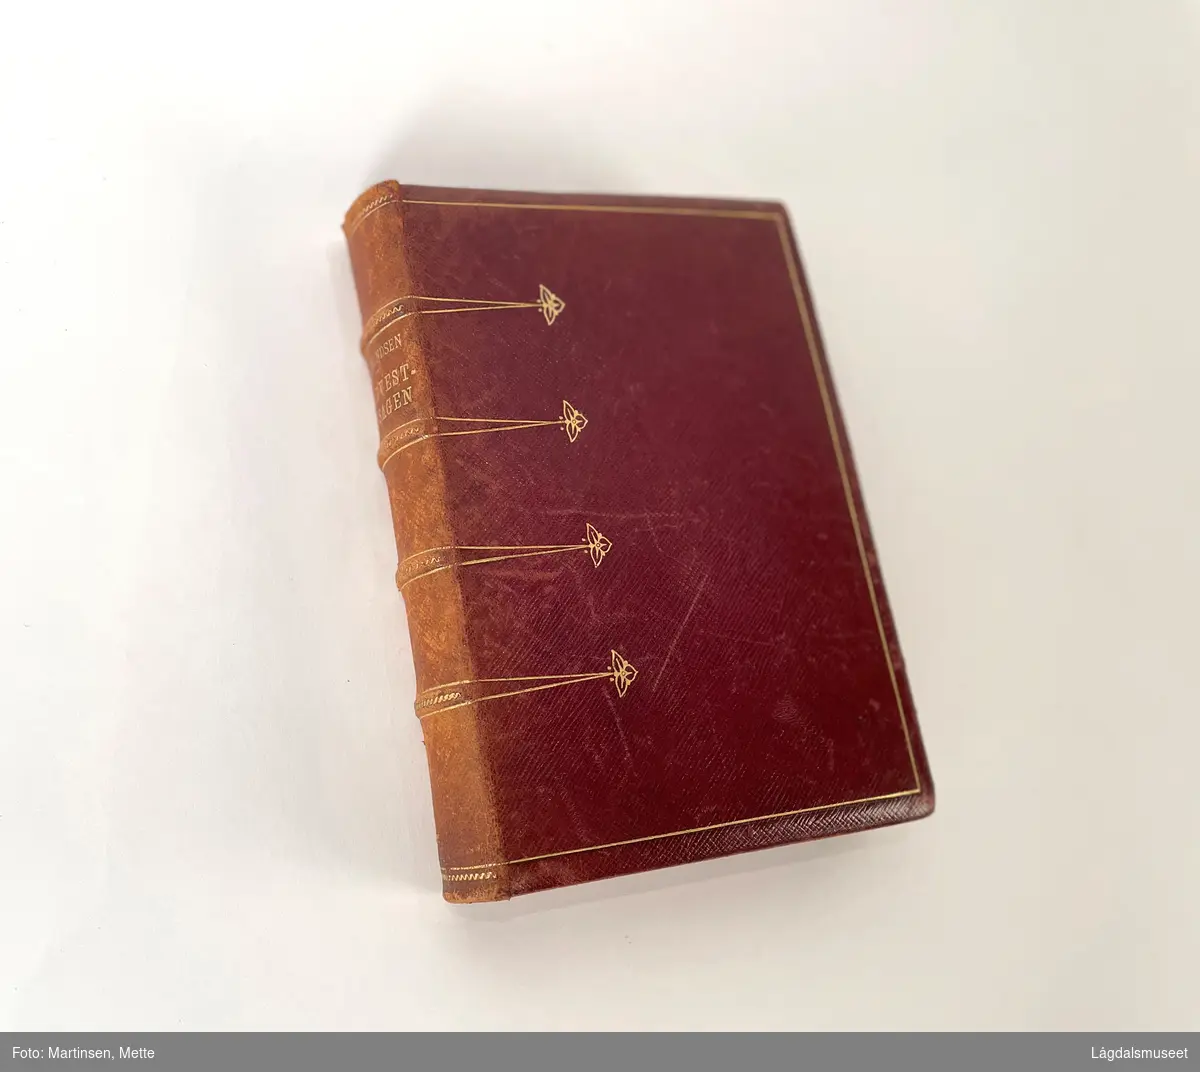 Roald Amundsens bok fra Gjøa-ekspedisjonen 1903-1907, med Finn Ristvedts navnetrekk.